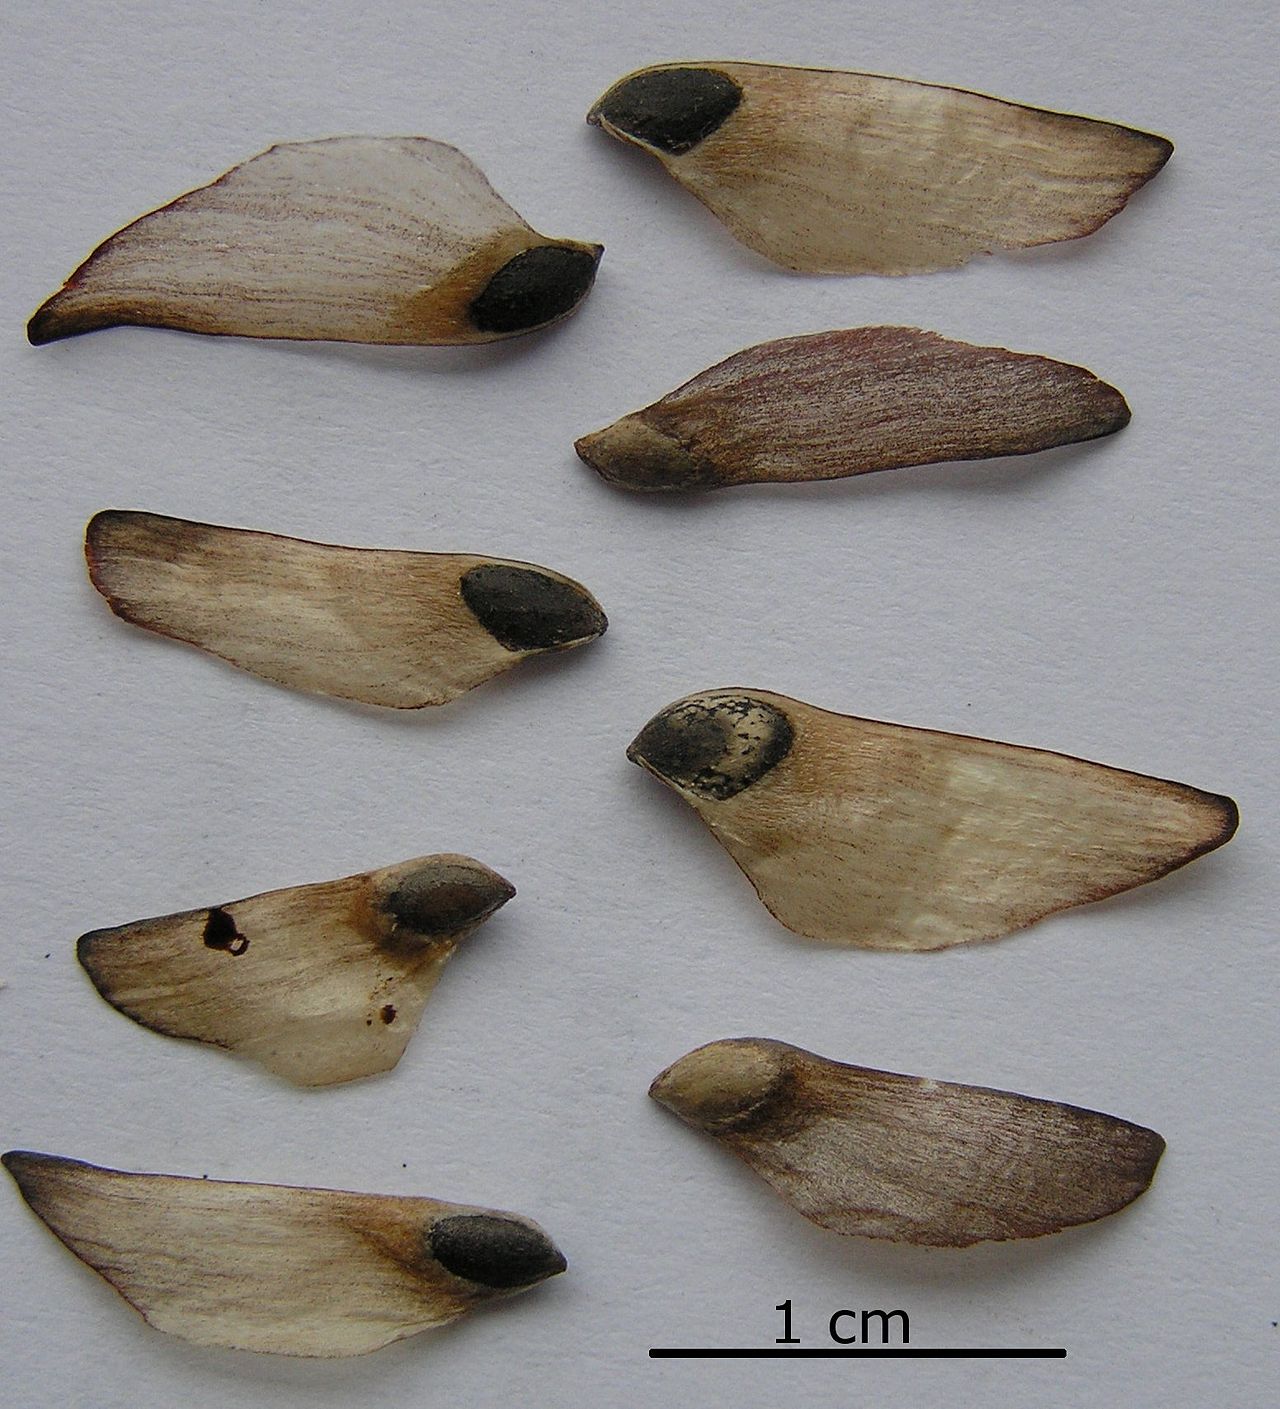 Ocho semillas de pino alado. Las alas son bronceadas y delgadas. Las semillas son de color marrón negruzco y ovoides.